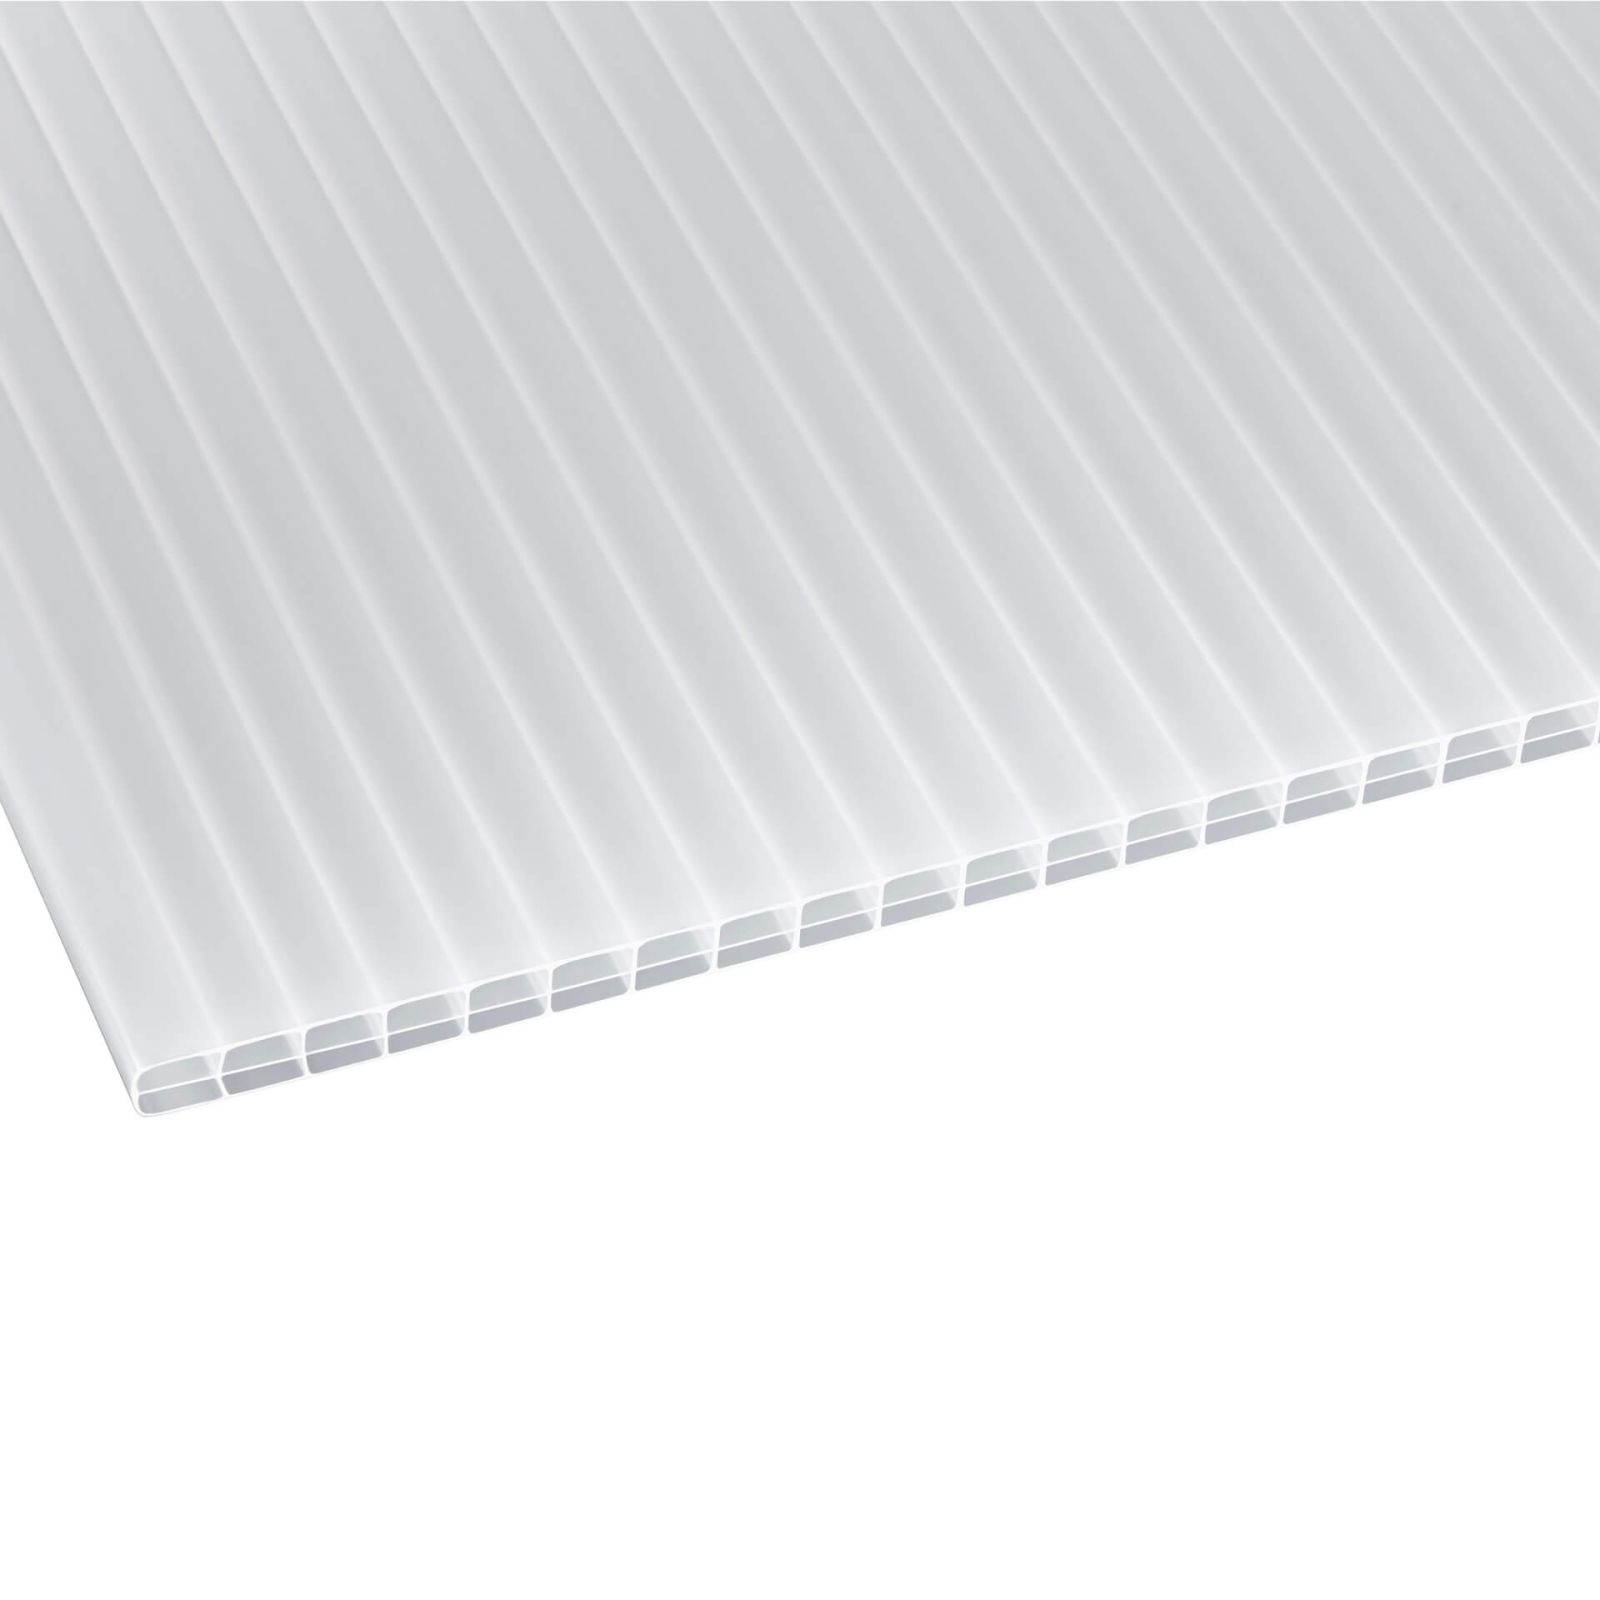 Polycarbonat Stegplatte | 16 mm | Profil A1 | Sparpaket | Plattenbreite 1200 mm | Opal Weiß | Blueline | Breite 3,74 m | Länge 2,00 m #3